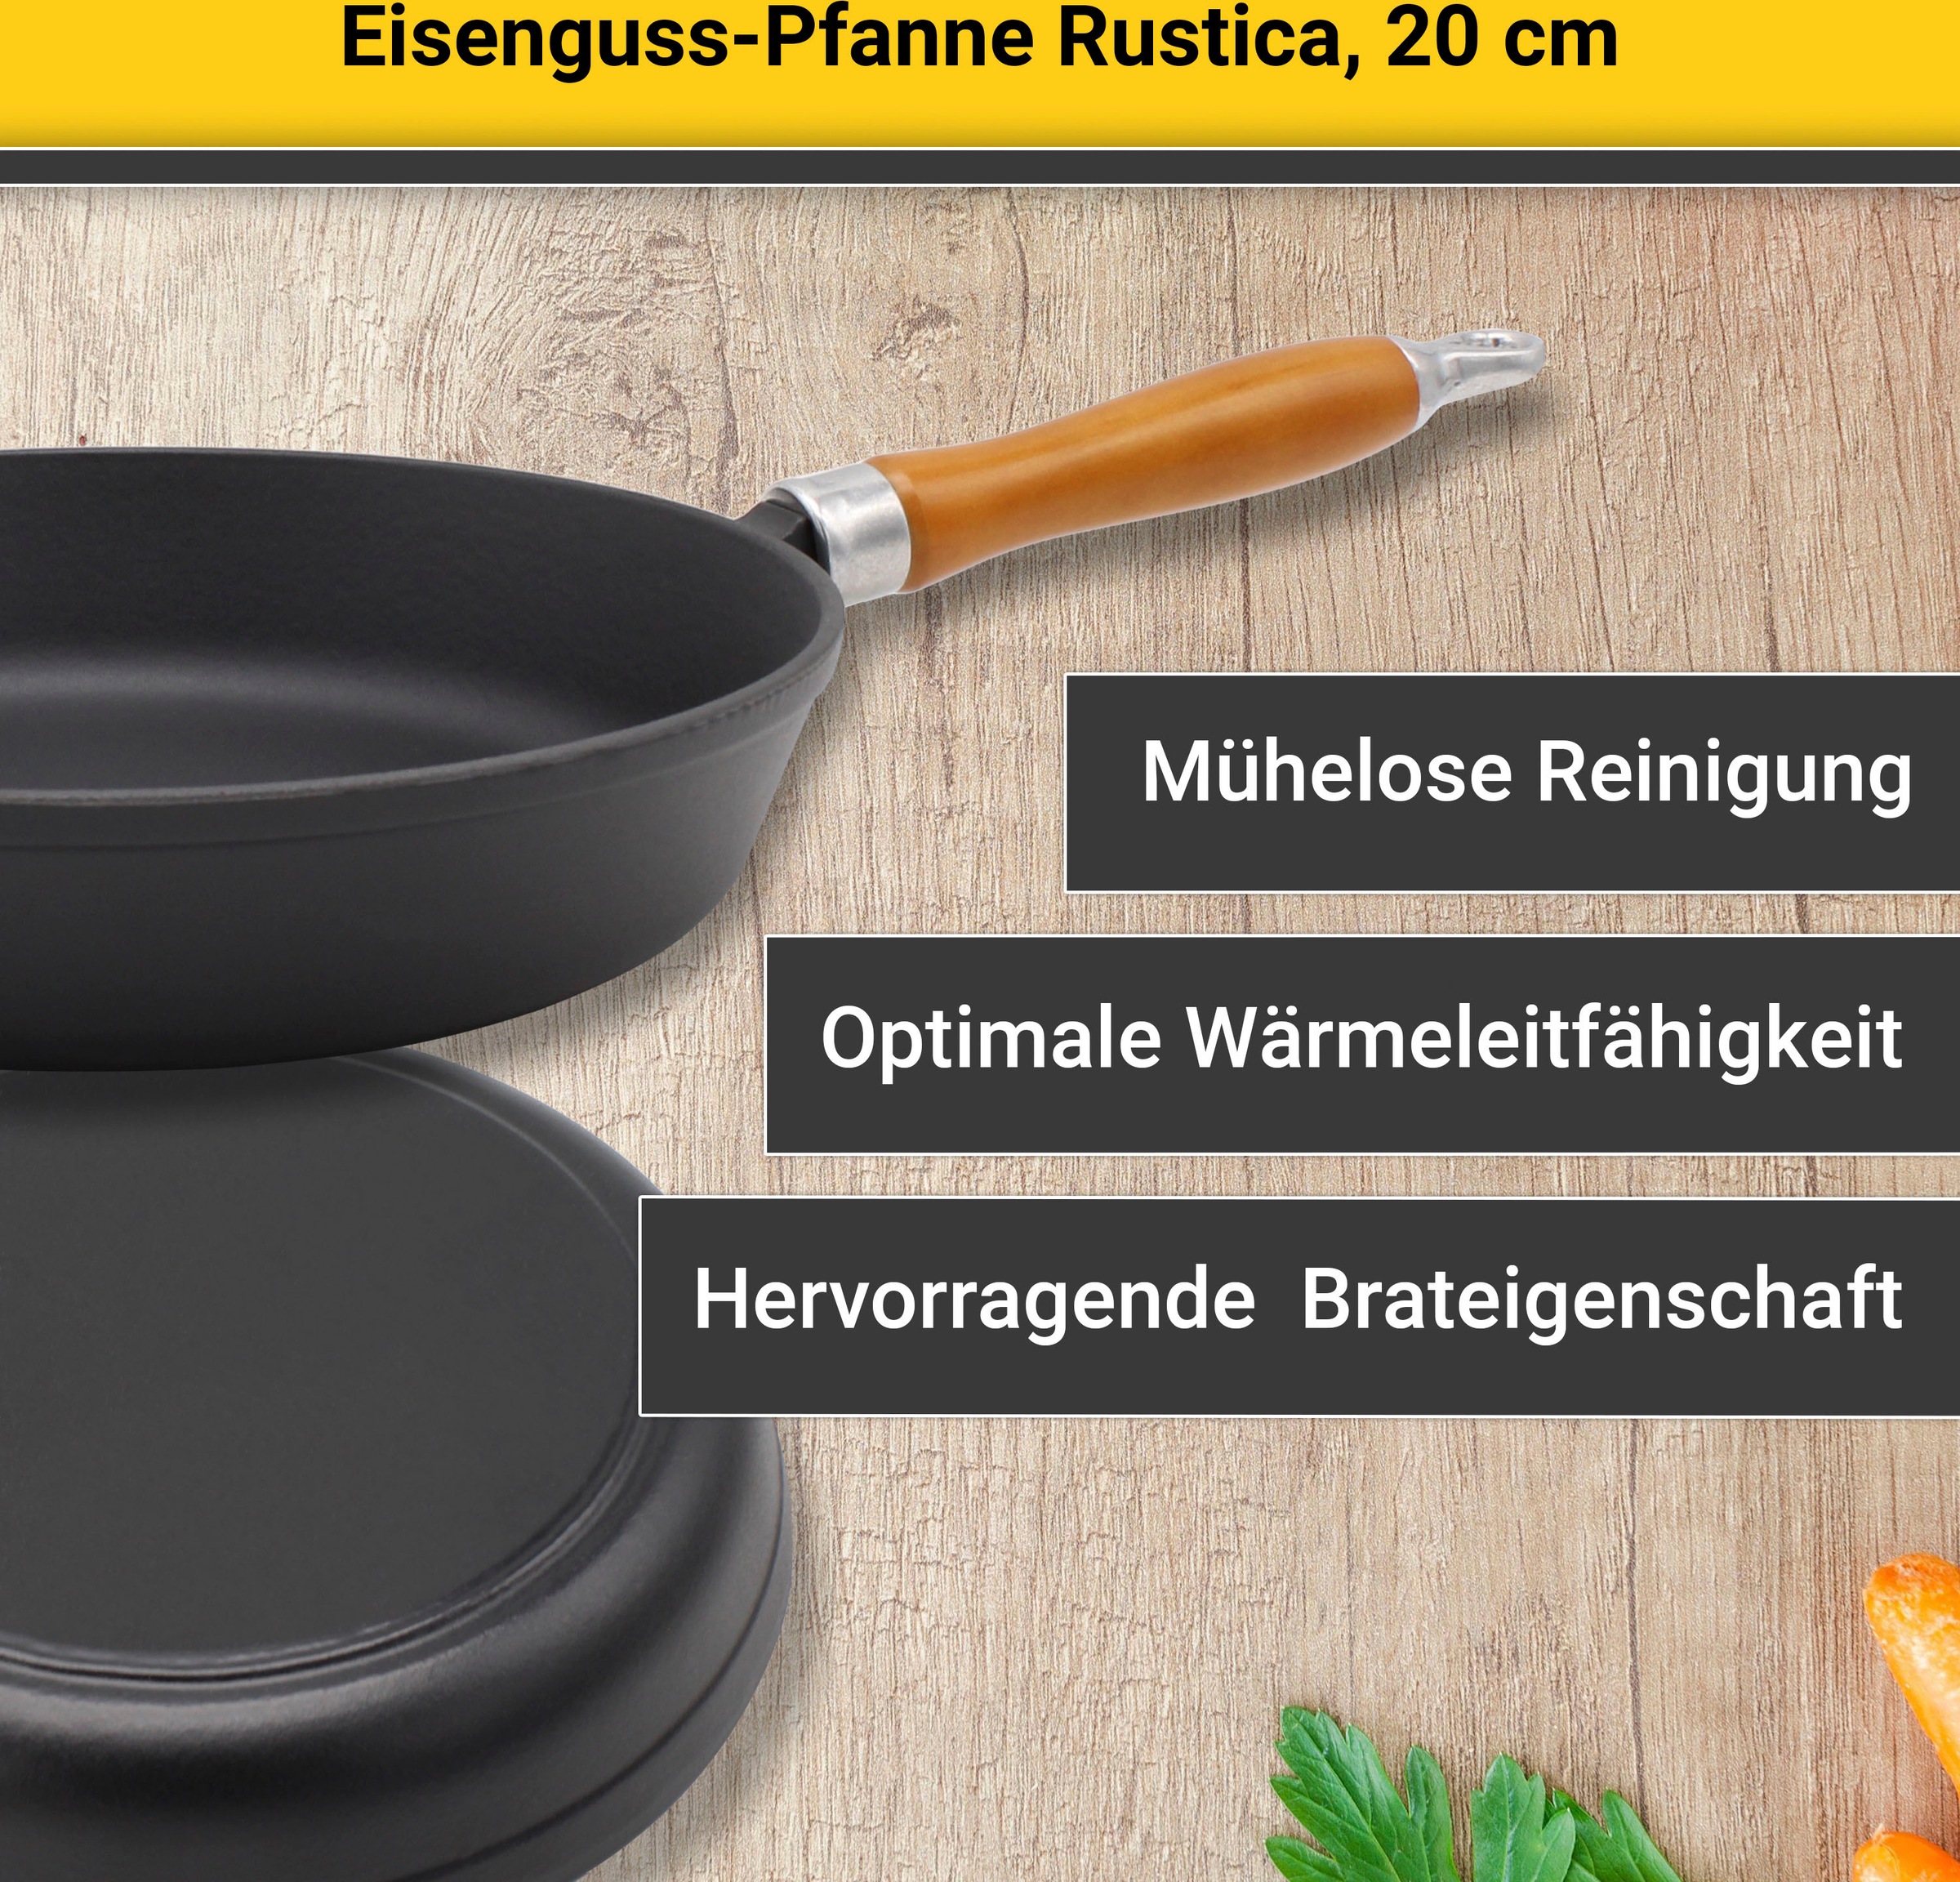 Krüger Bratpfanne »Einsenguss Pfanne RUSTICA, 20 cm«, Gusseisen, (1 tlg.), für Induktions-Kochfelder geeignet